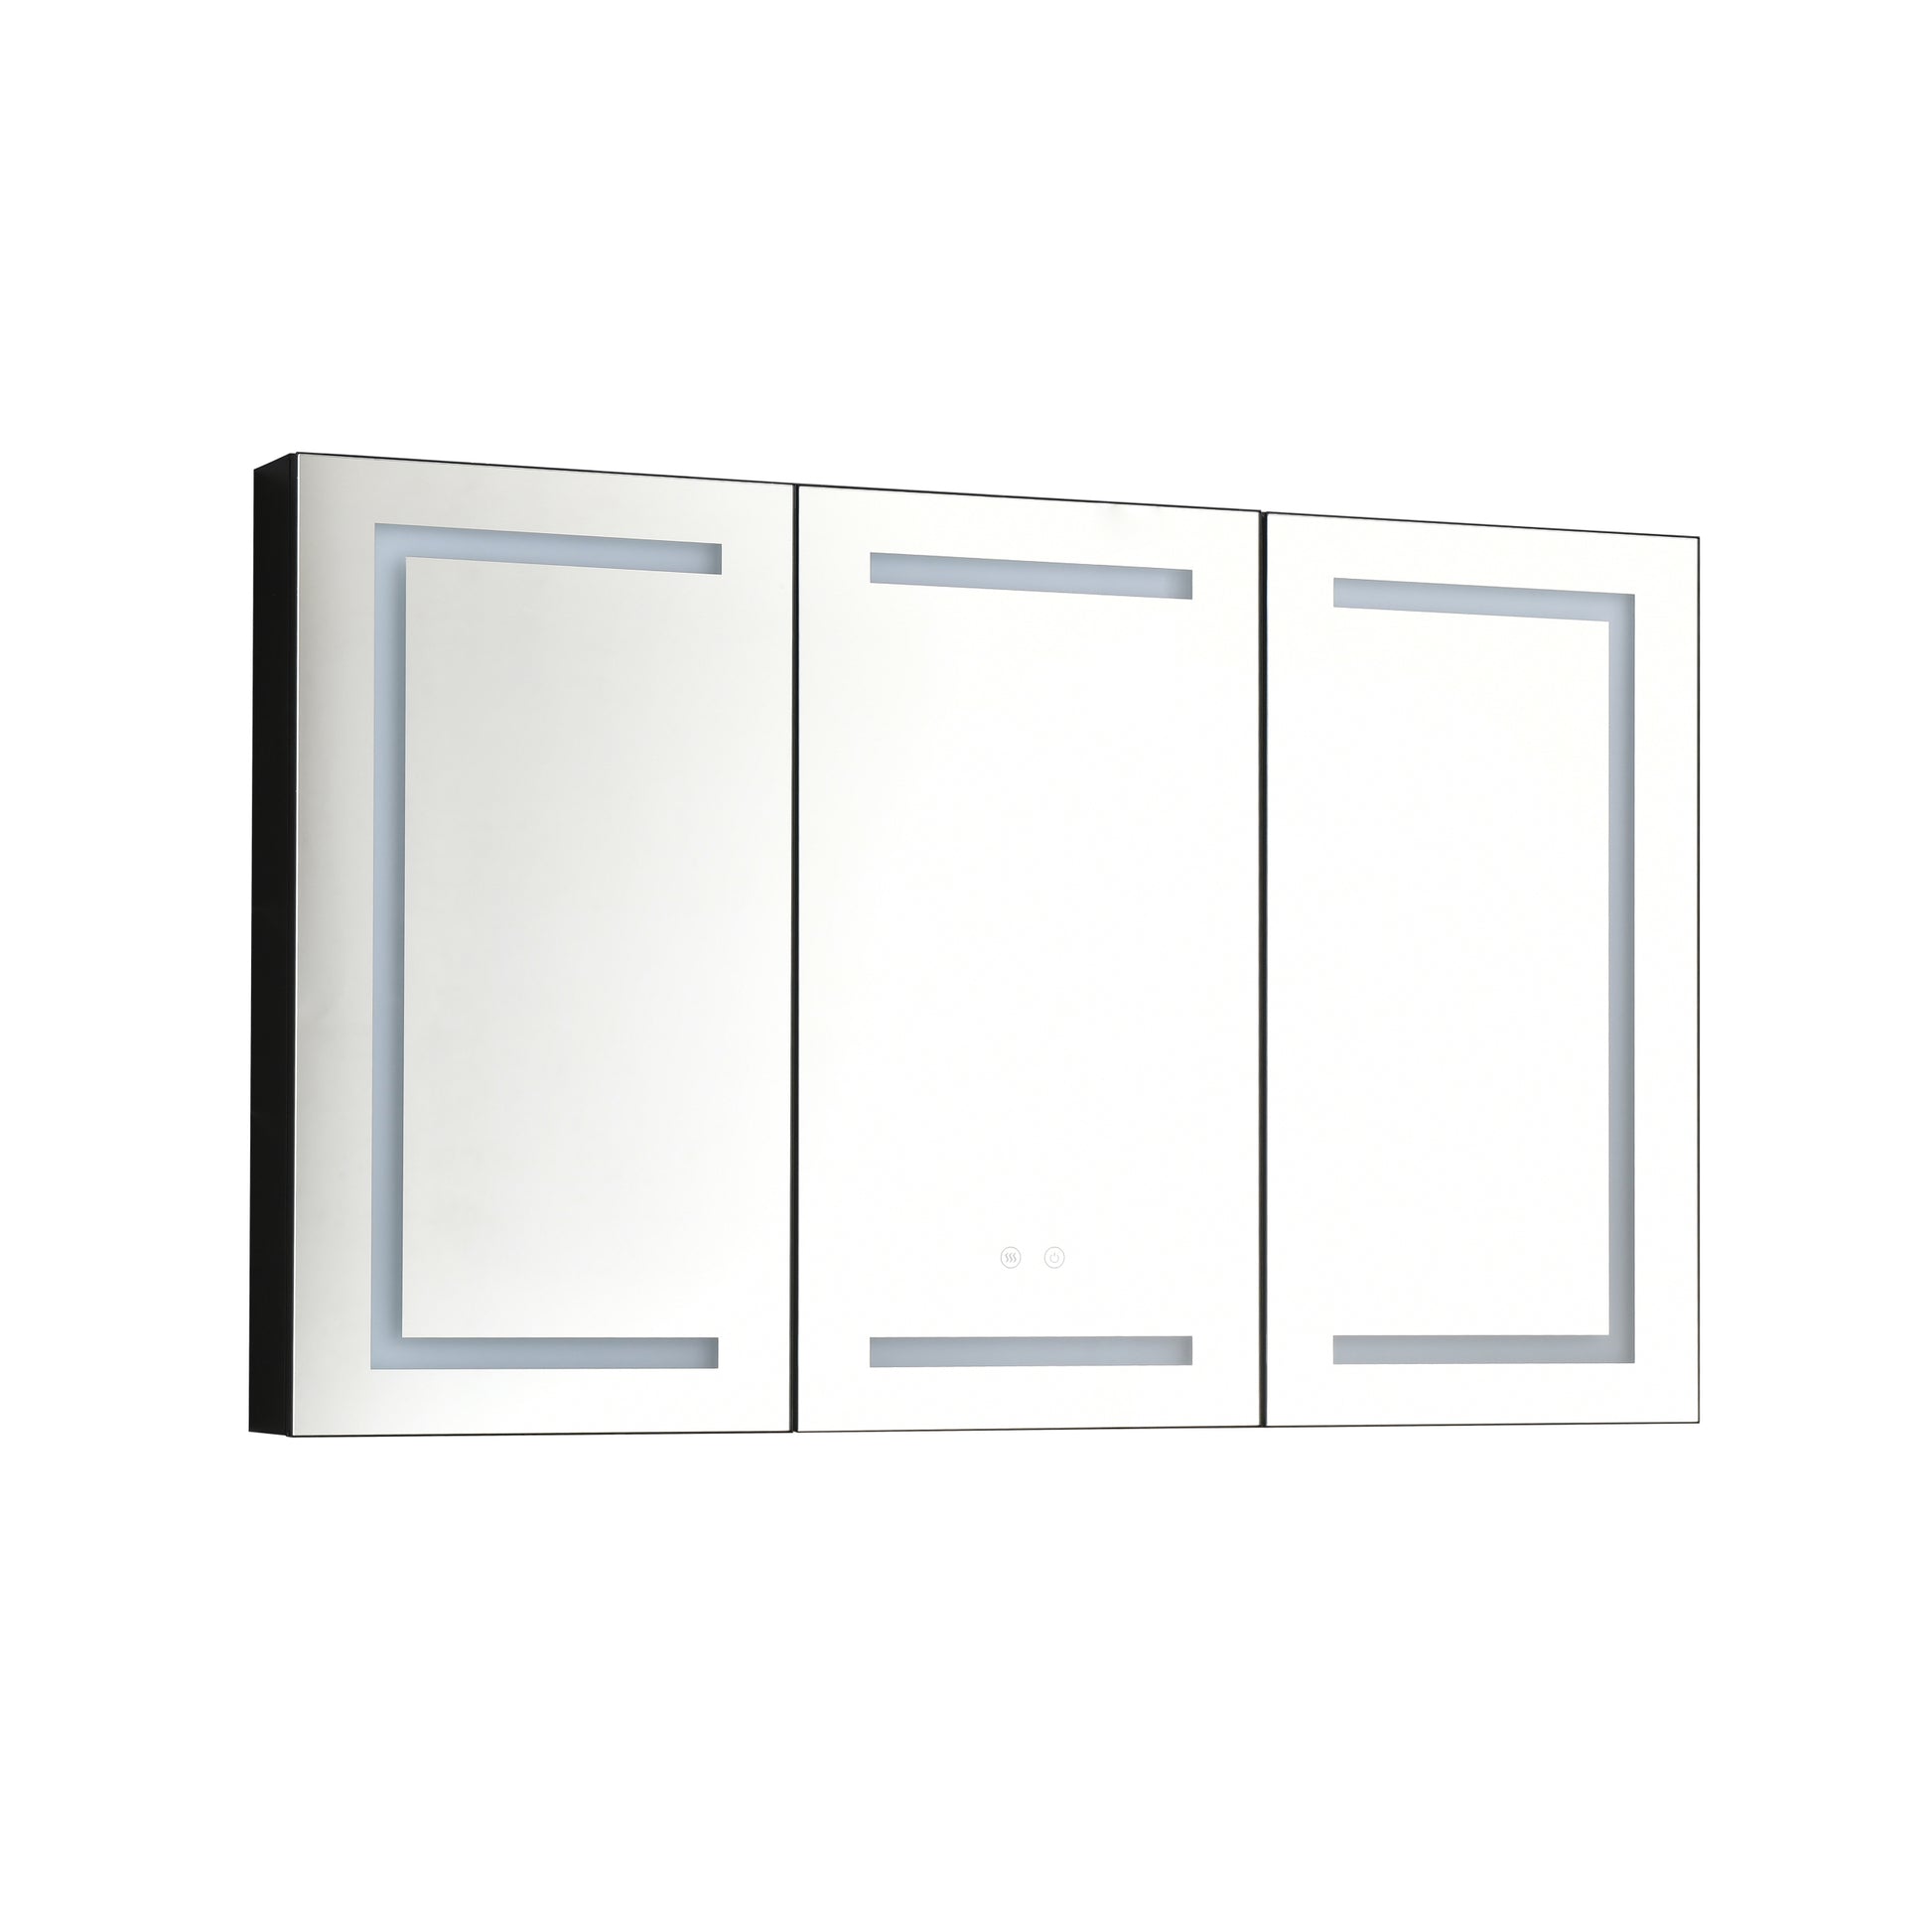 LED Mirror Medicine Cabinet with Lights, Dimmer matt black-aluminium